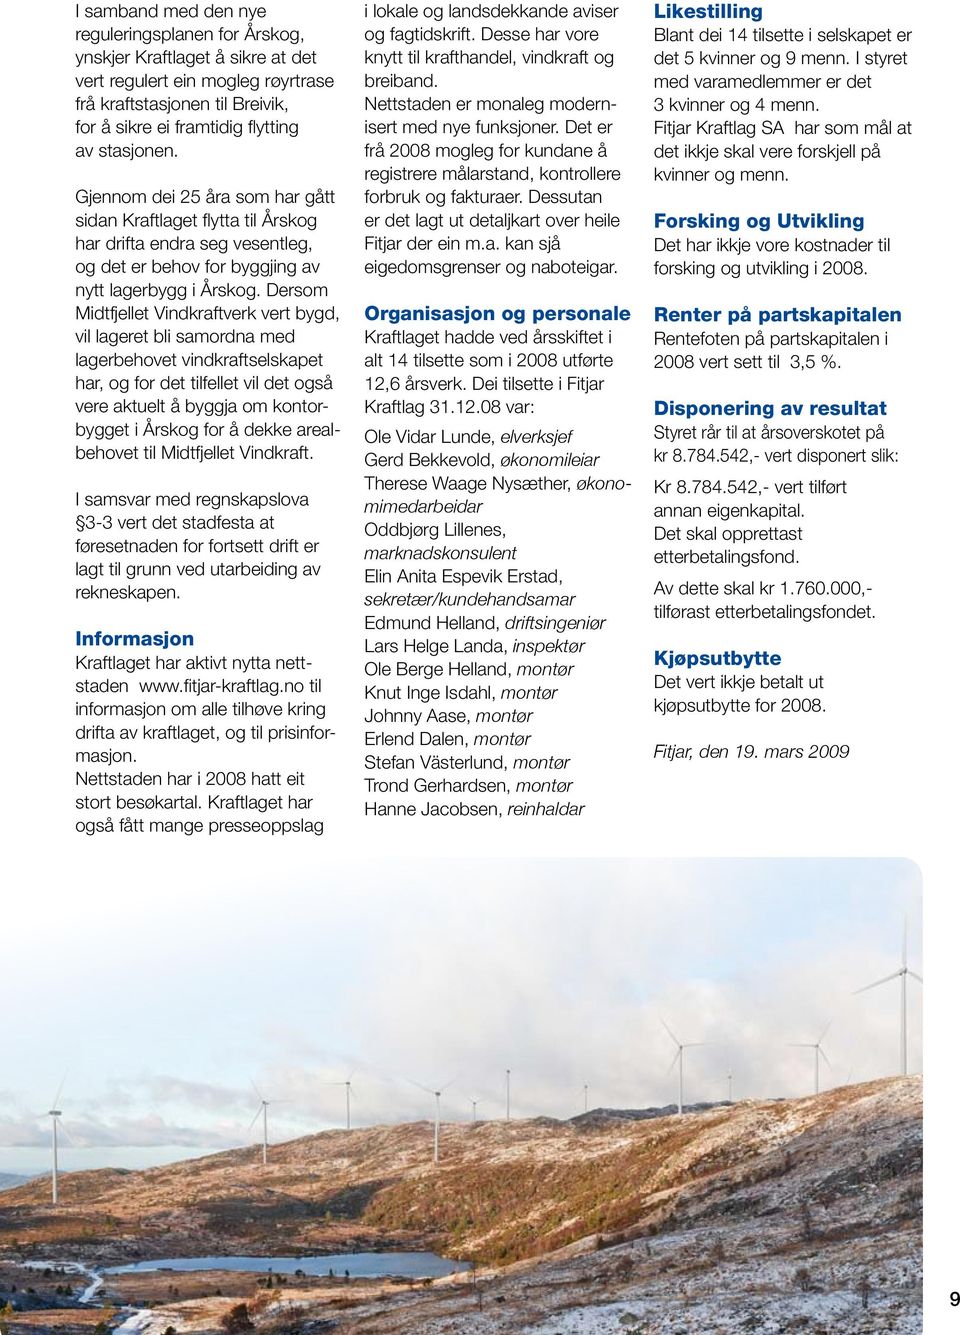 Dersom Midtfjellet Vindkraftverk vert bygd, vil lageret bli samordna med lagerbehovet vindkraftselskapet har, og for det tilfellet vil det også vere aktuelt å byggja om kontorbygget i Årskog for å